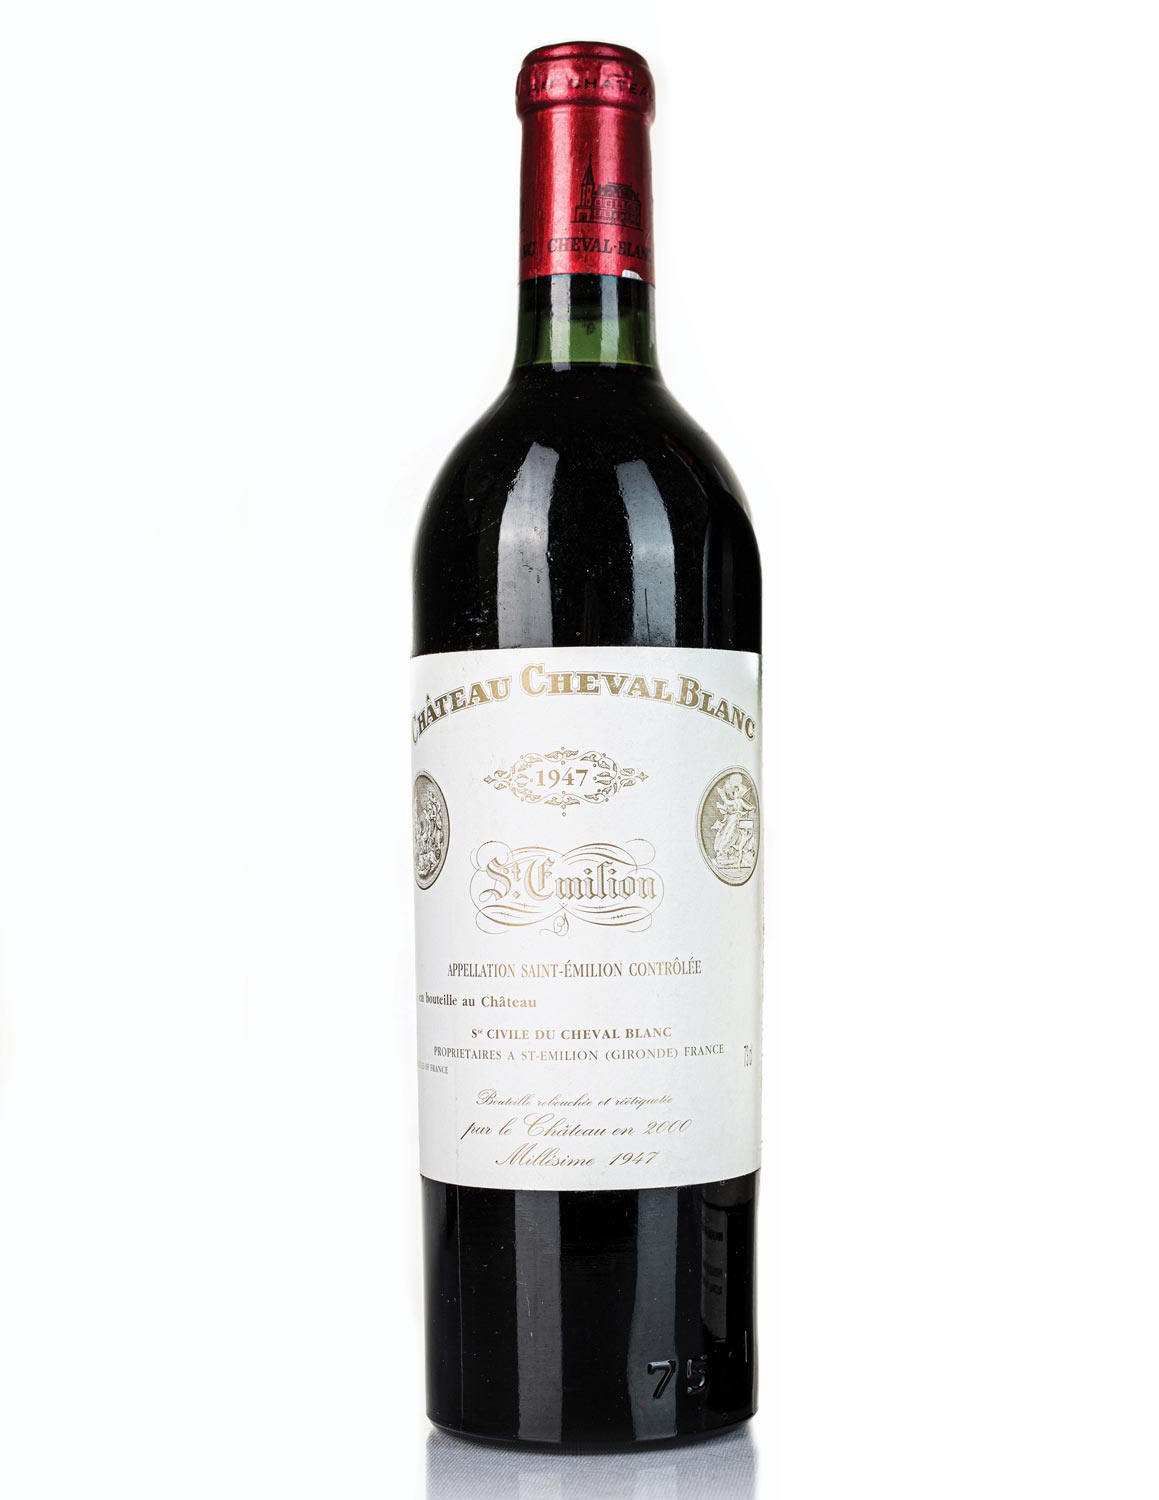 Lot 218: 1 bottle of 1947 St. Emilion Chateau Cheval Blanc